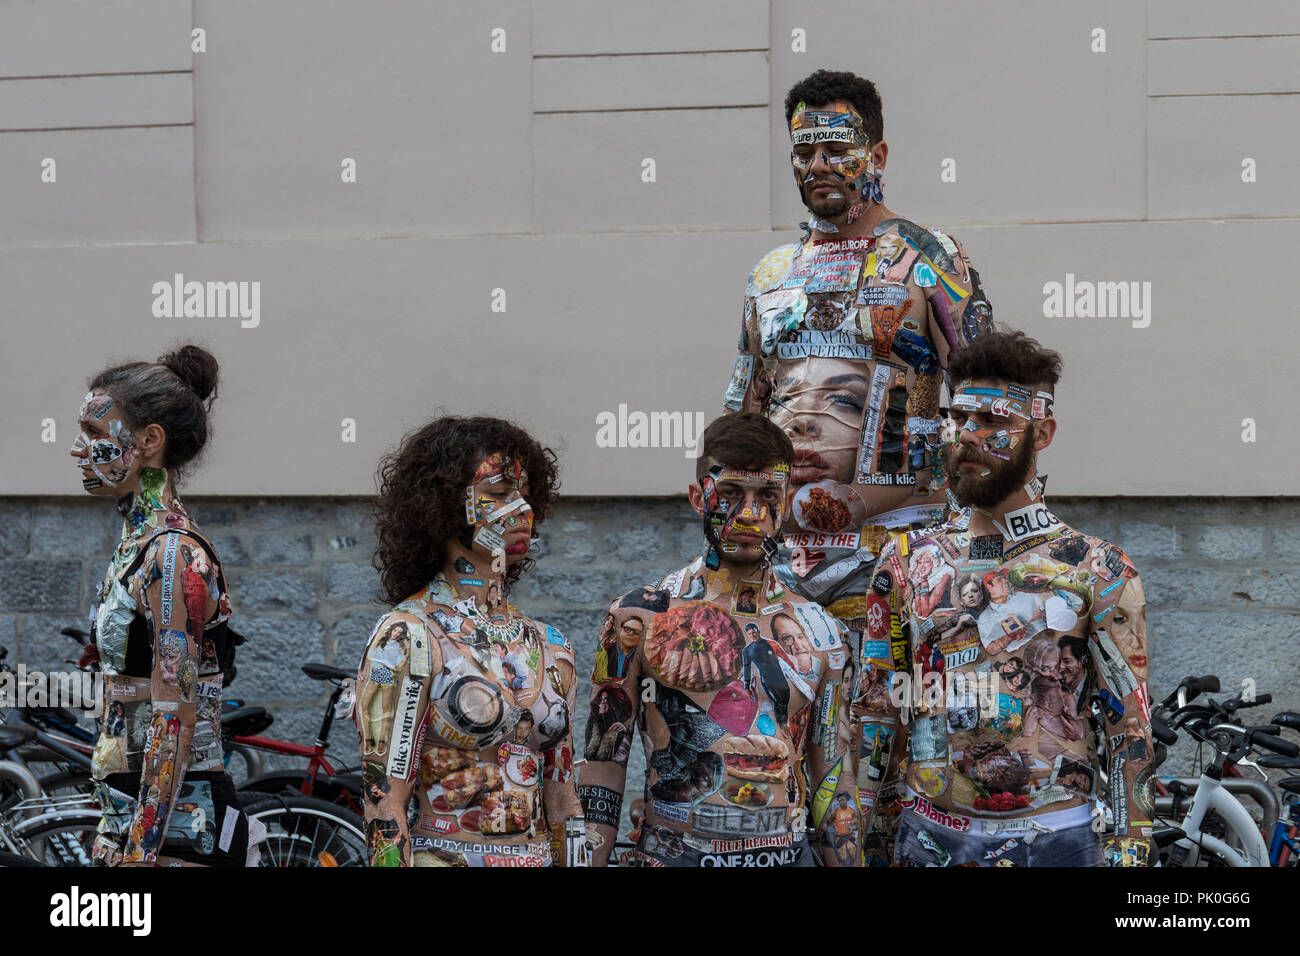 Artisti brasiliani Anti Status Quo Companhia de Dança. Performance di danza camaleonti, ballerini' corpi come tele per supporti stampati e pubblicità Foto Stock